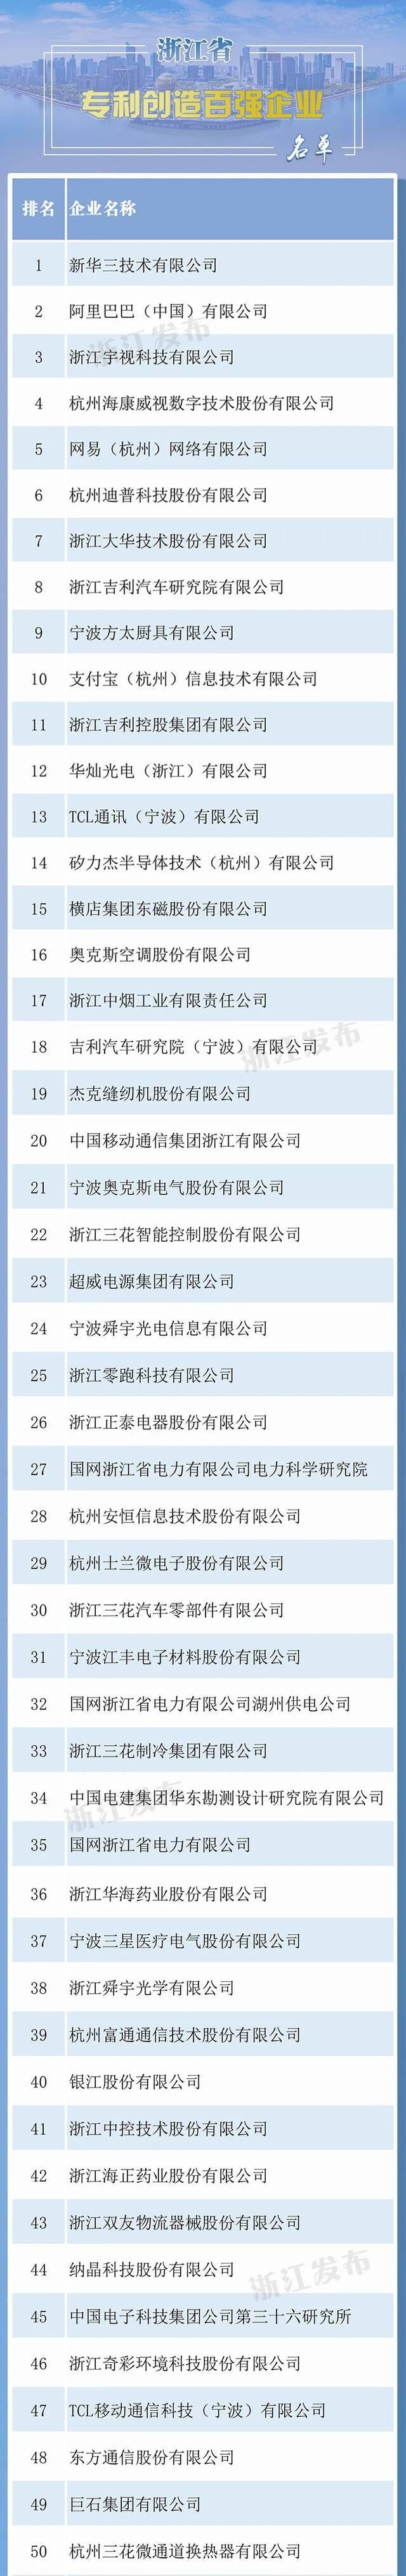 浙江省创造力百强企业榜单发布，快来看看哪些上榜～